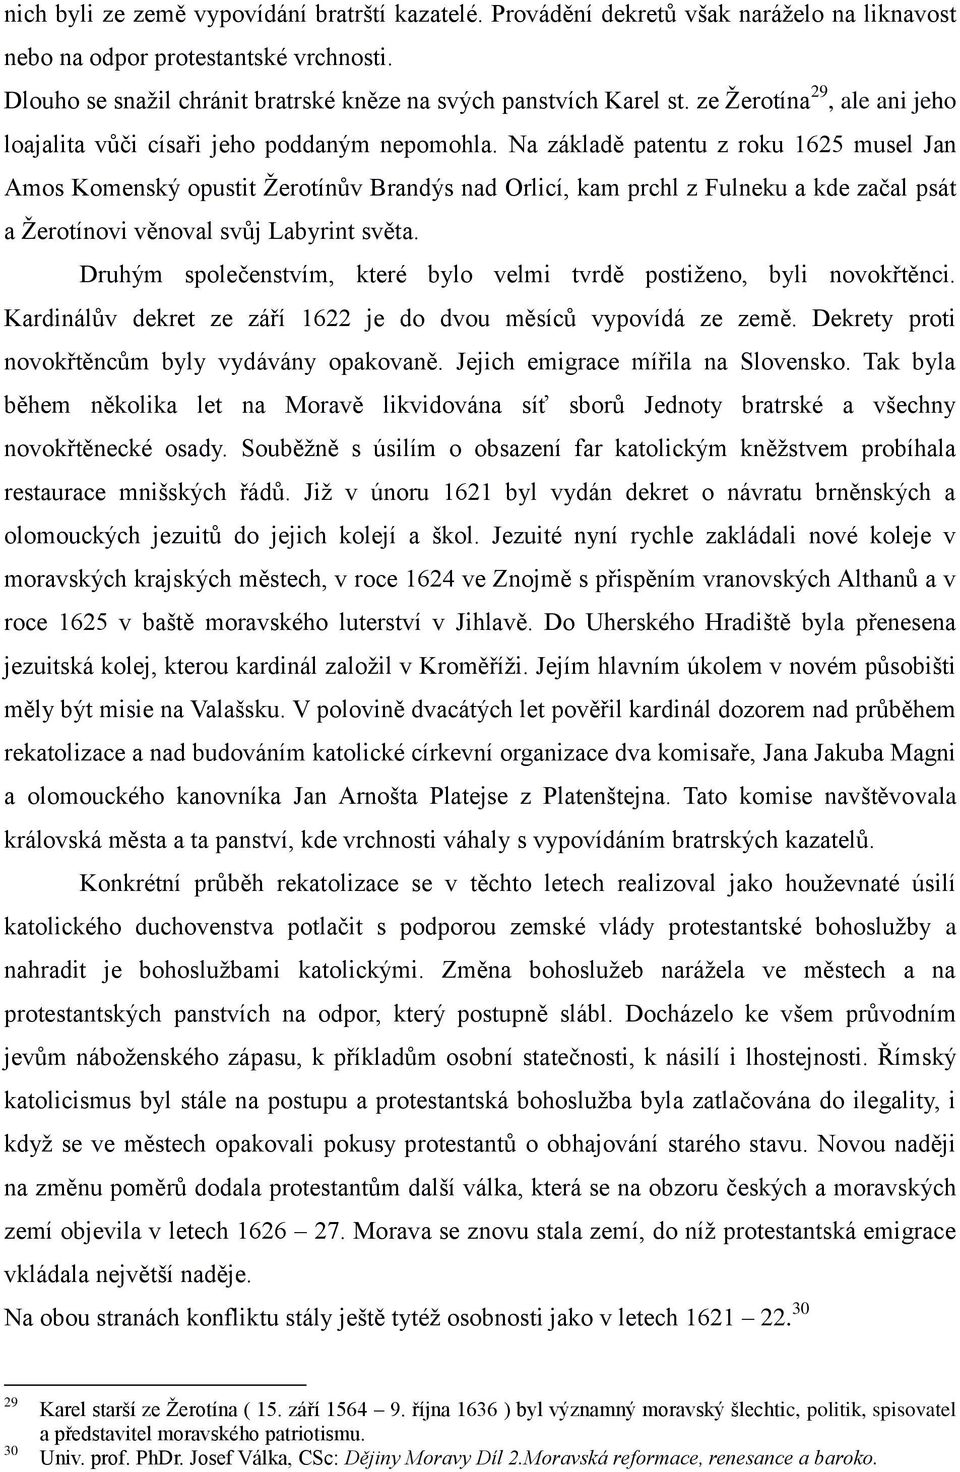 Na základě patentu z roku 1625 musel Jan Amos Komenský opustit Žerotínův Brandýs nad Orlicí, kam prchl z Fulneku a kde začal psát a Žerotínovi věnoval svůj Labyrint světa.